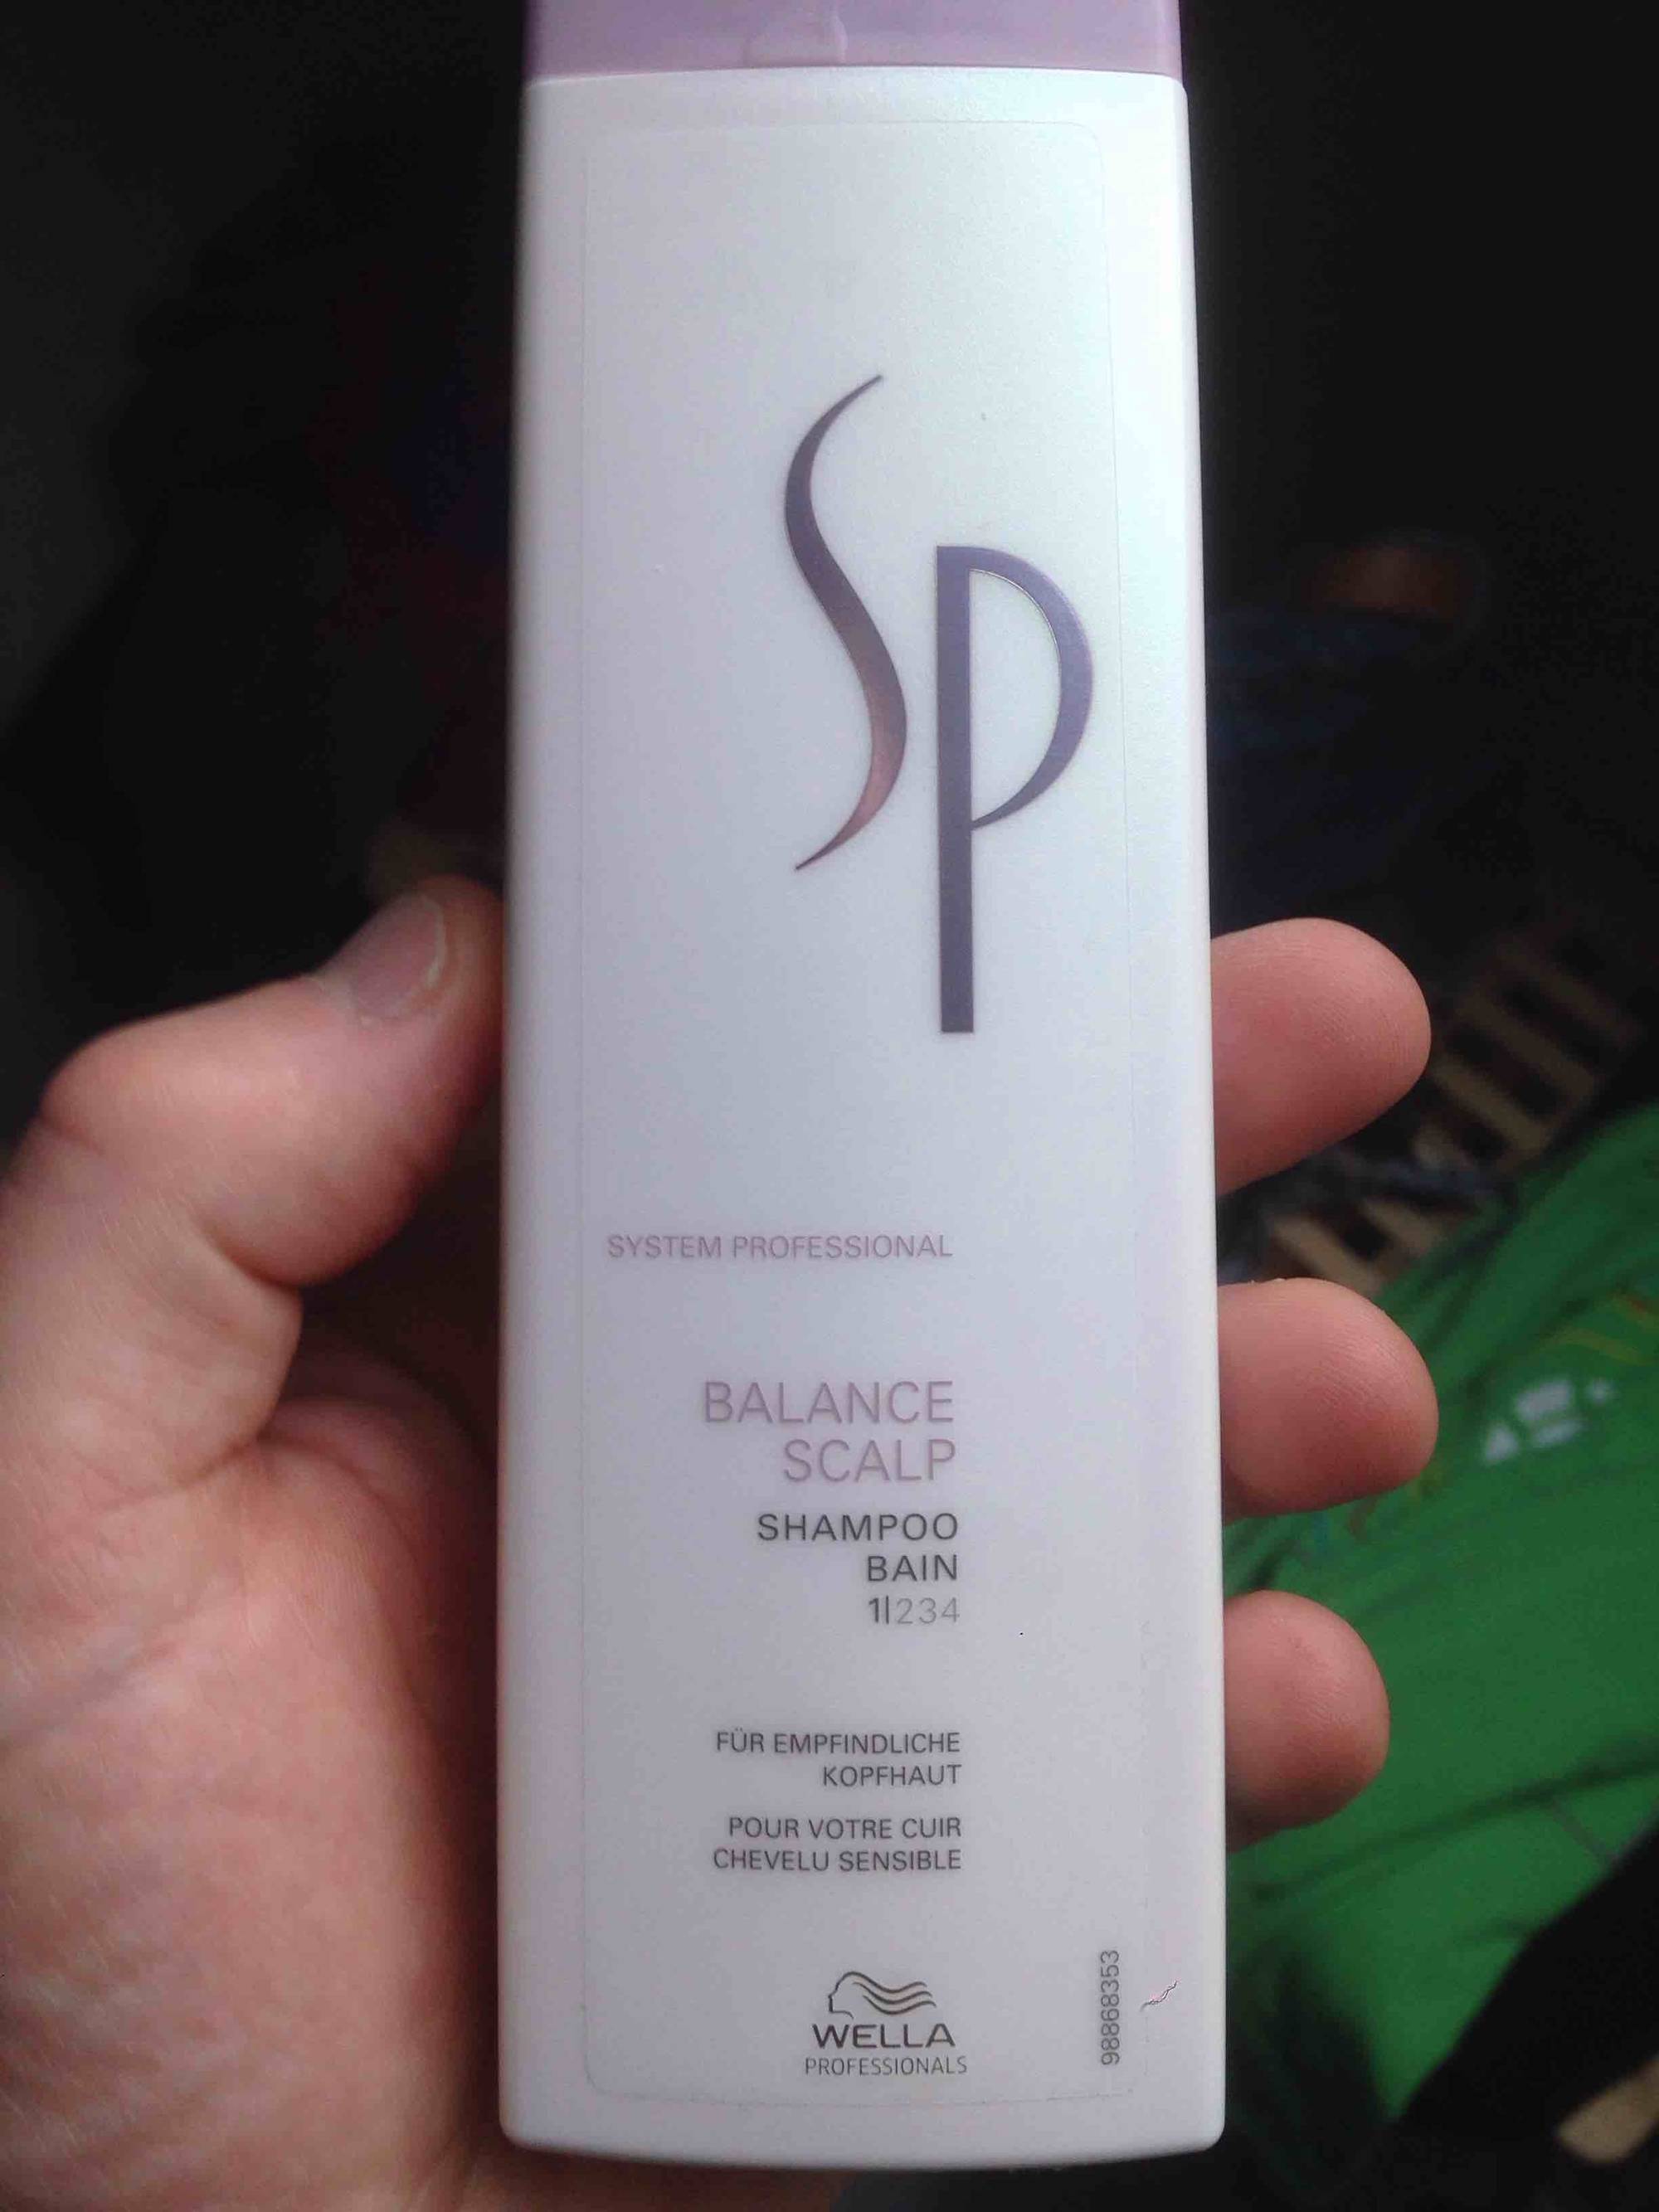 WELLA - SP balance Scalp - Shampoo Bain